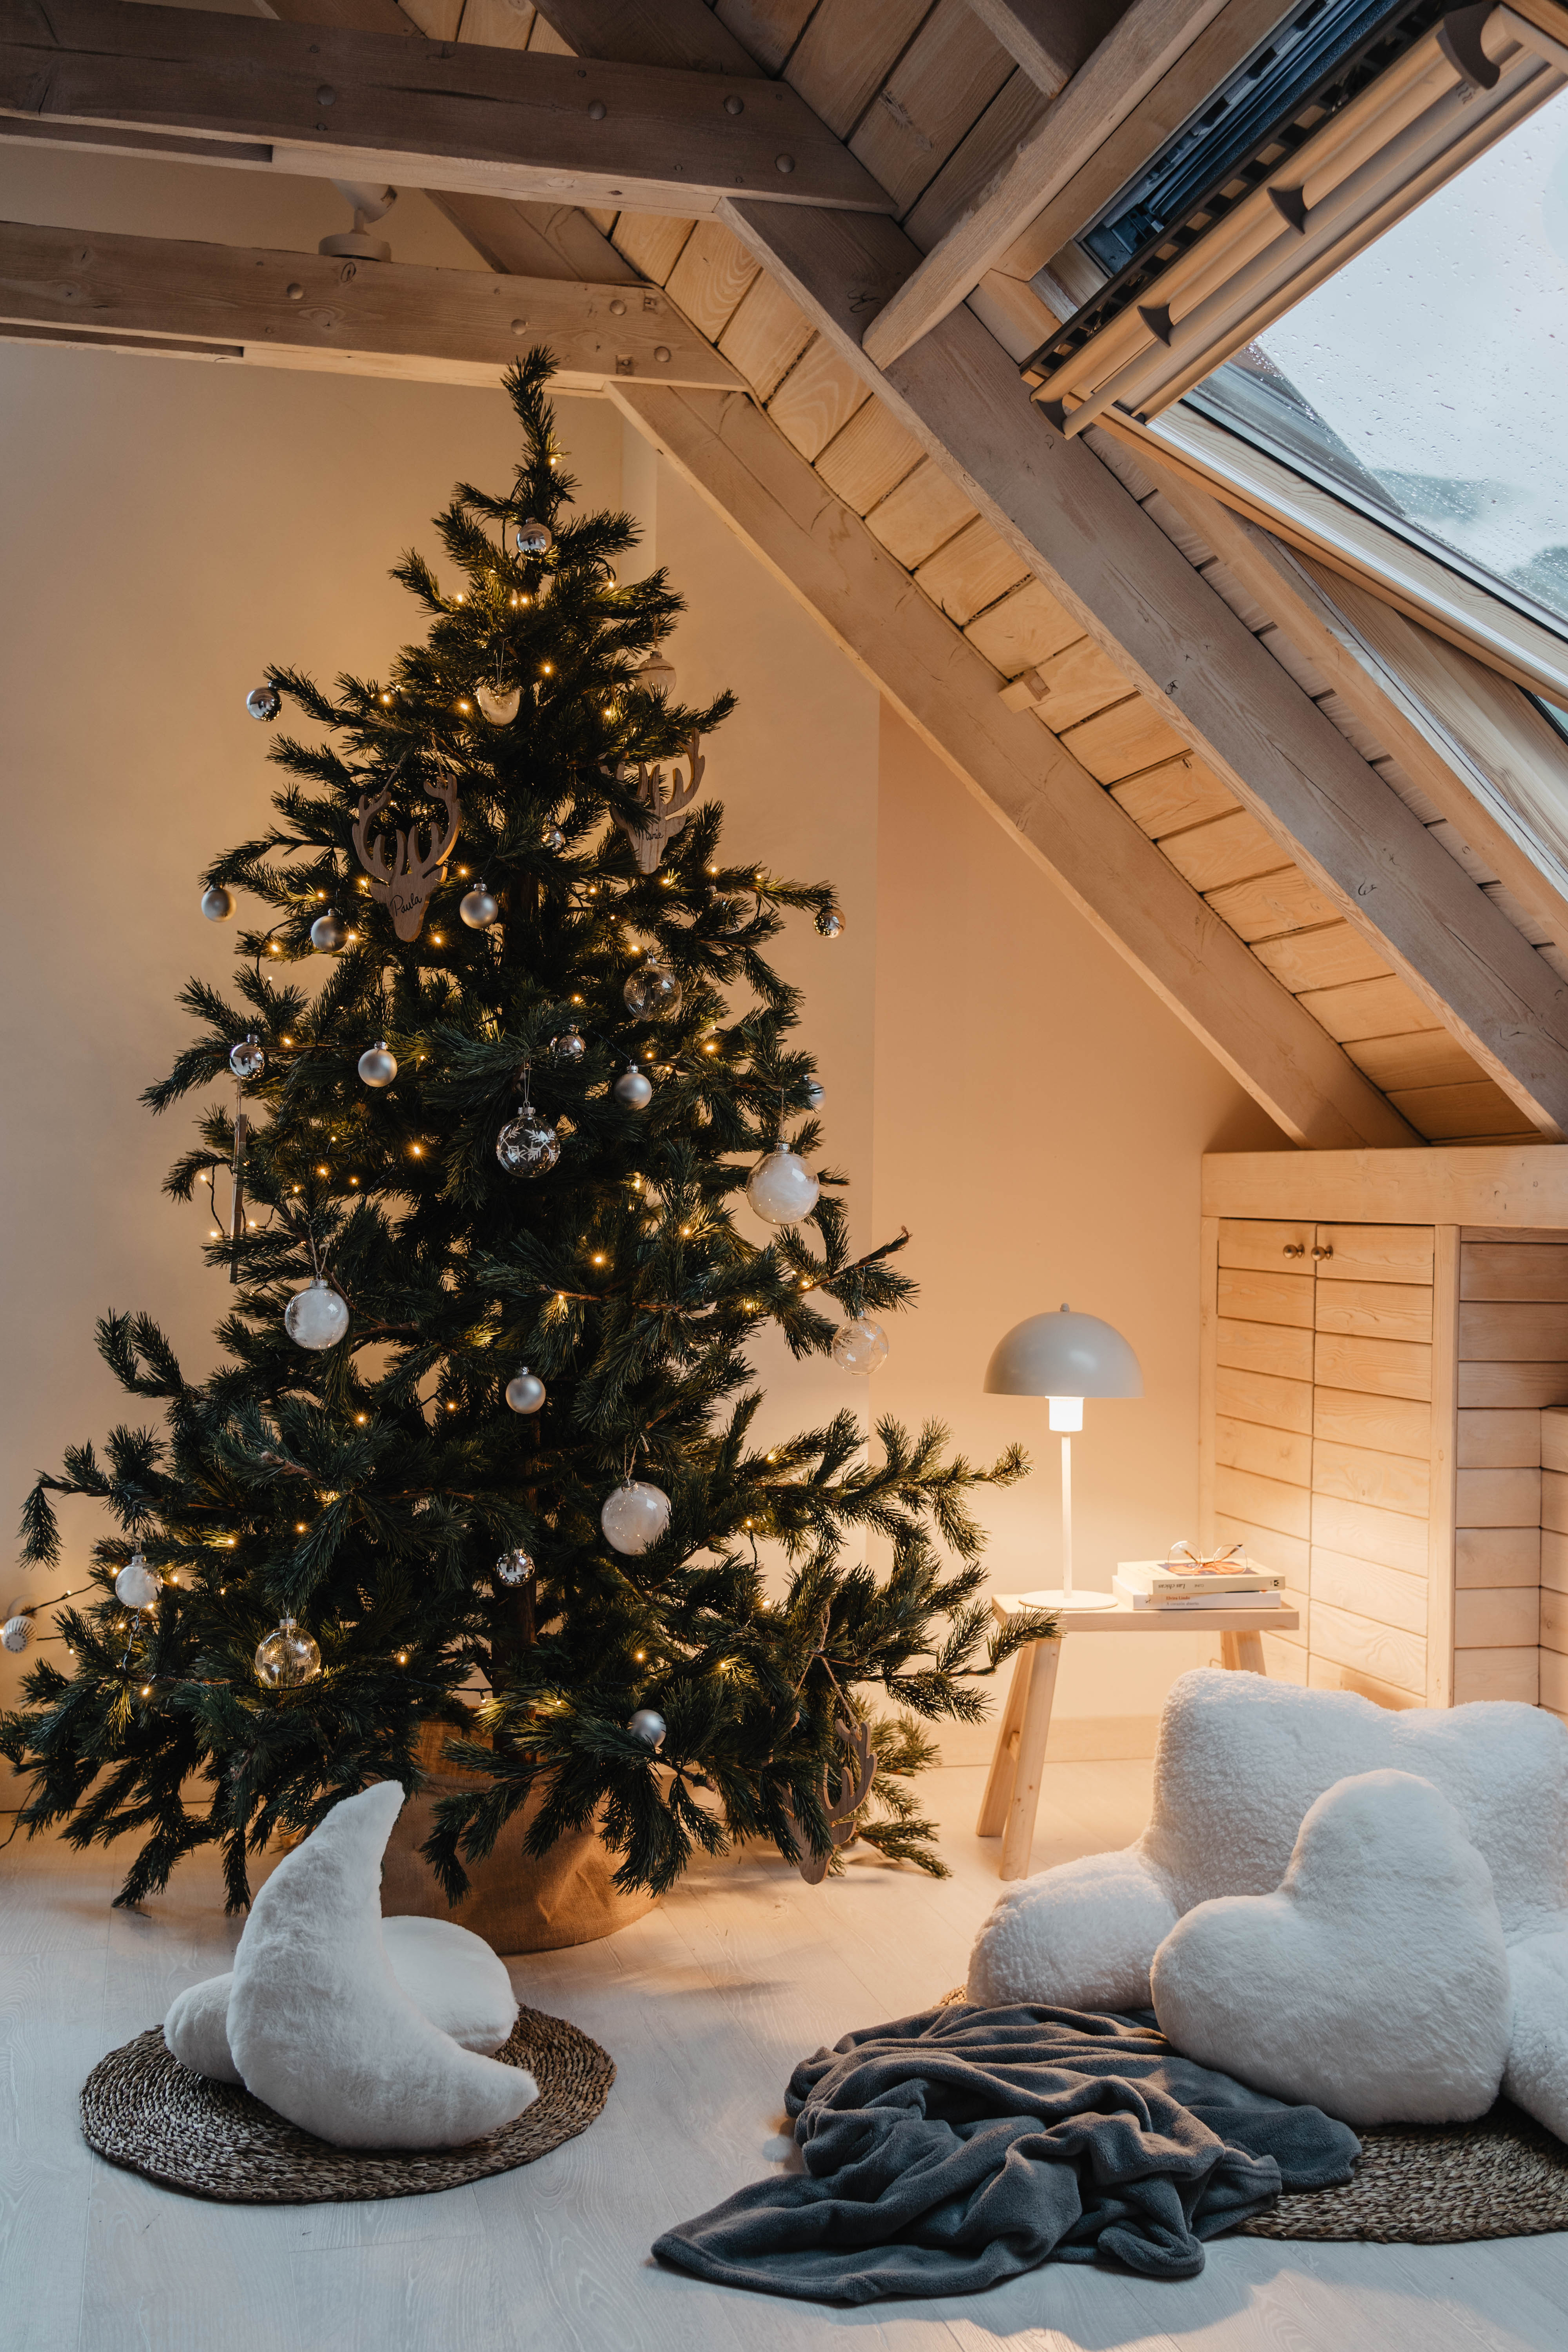 Cómo decorar el árbol de Navidad este año: 7 ideas infalibles | Lifestyle